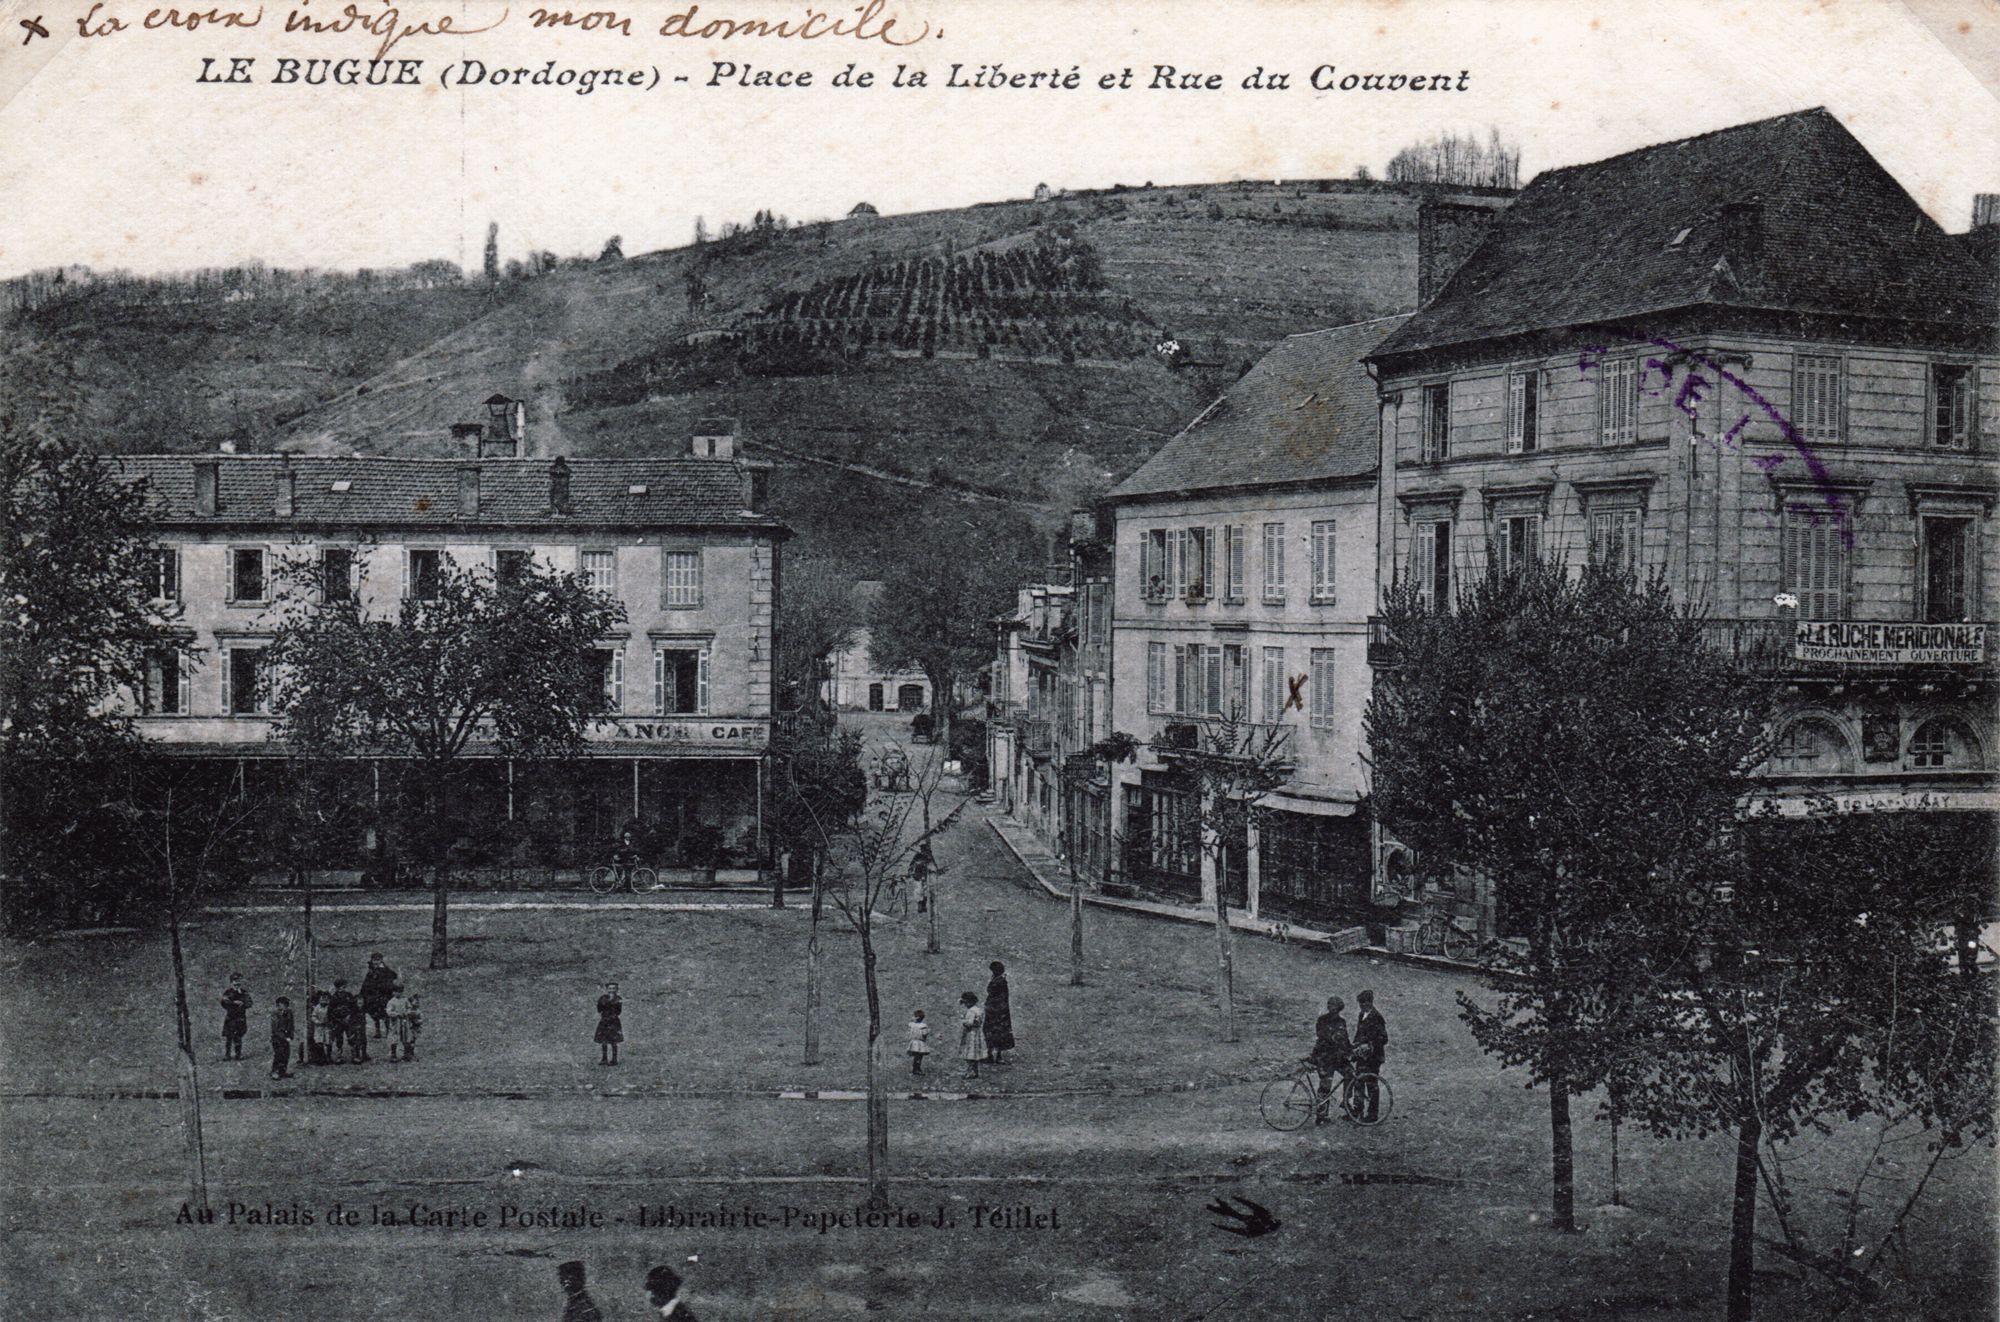 Place de la Liberté and Rue du Couvent in Le Bugue in 1900